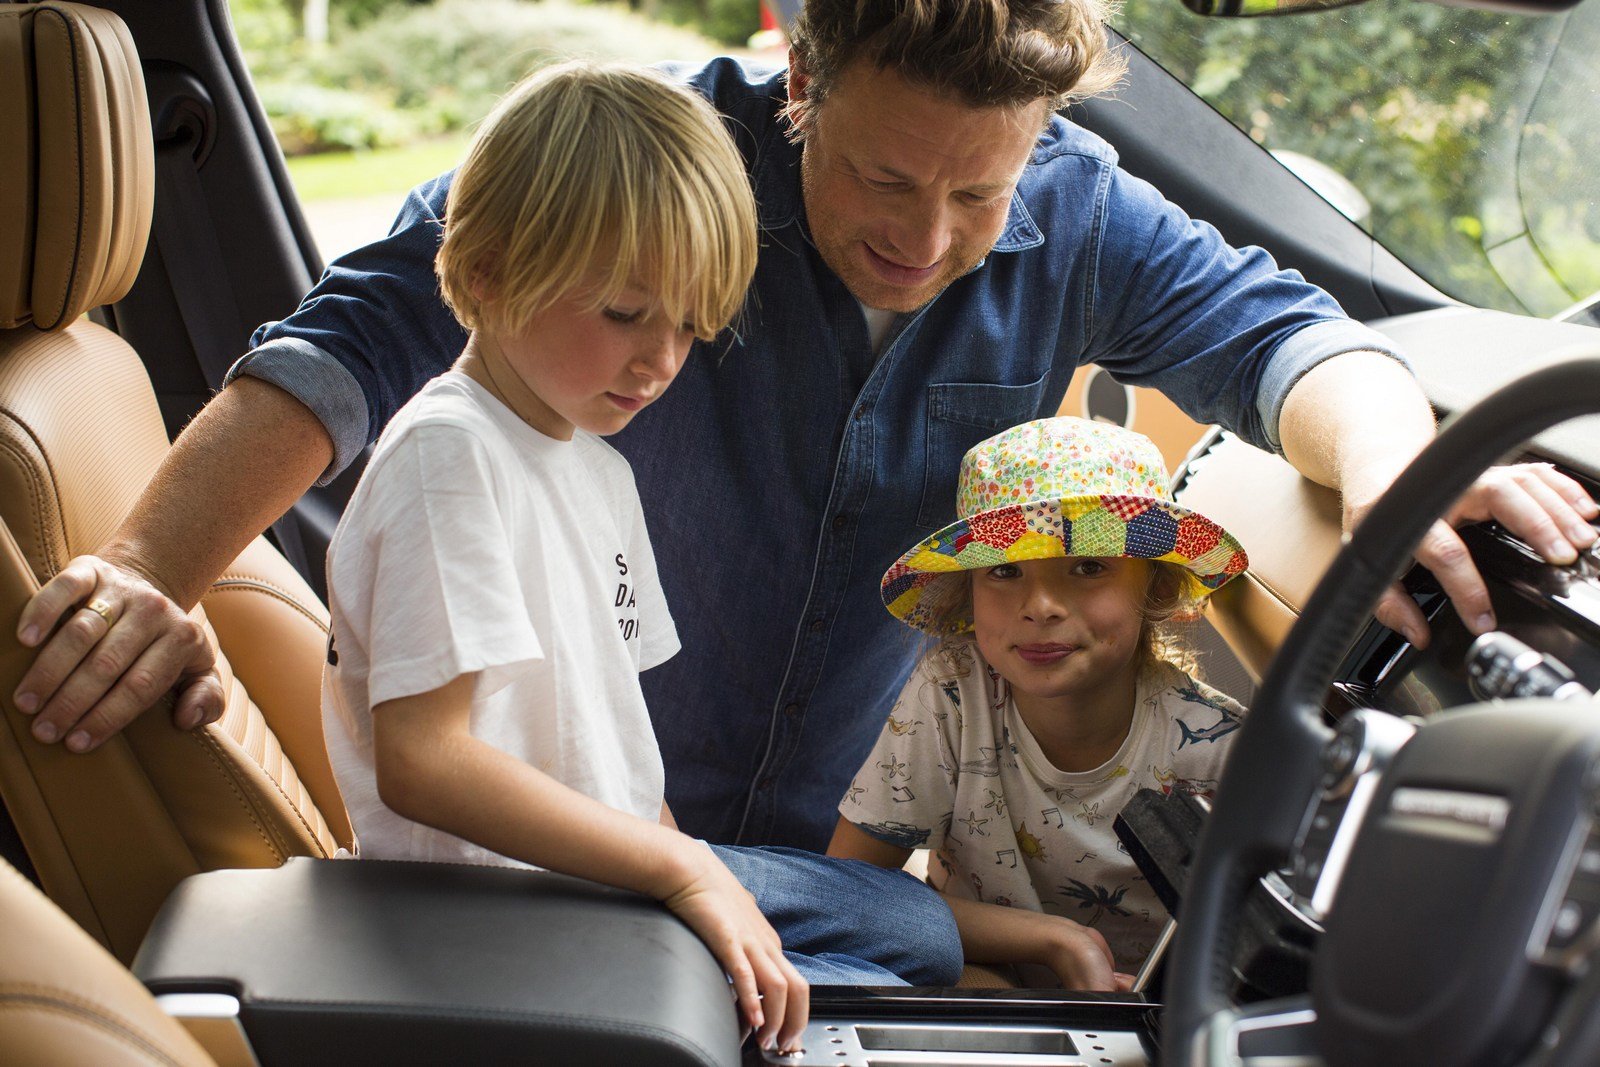 Land Rover Discovery ve speciální úpravě pro Jamie Olivera